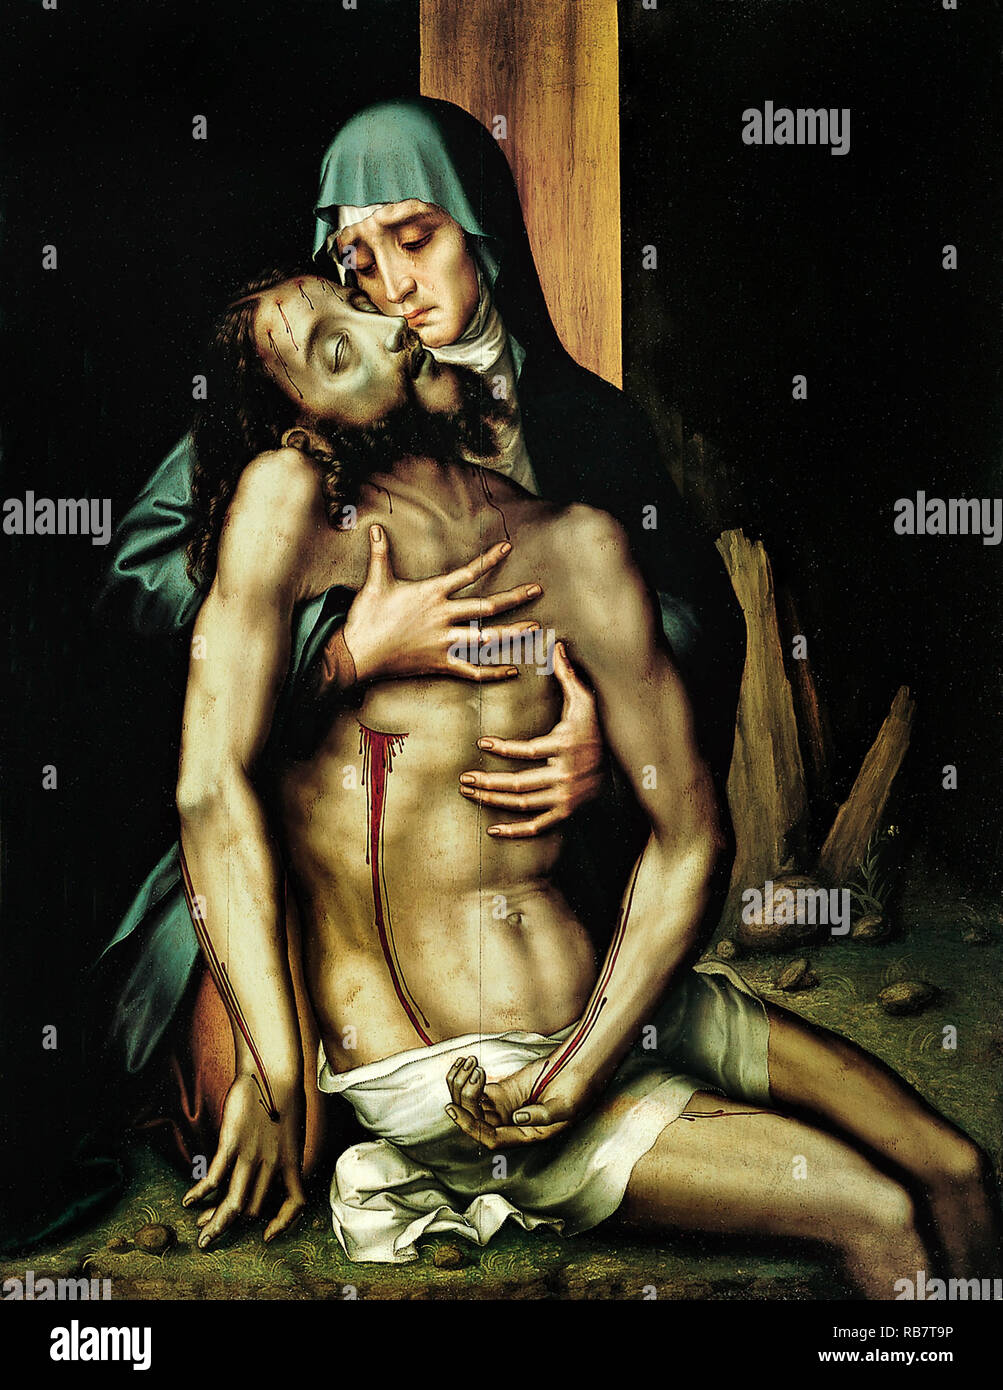 Luis de Morales, La Piedad, Jésus Christ mort dans les bras de sa mère, la Vierge Marie, vers 1570 huile sur bois, Real Academia de Bellas Artes de San Fernando, Madrid, Espagne. Banque D'Images